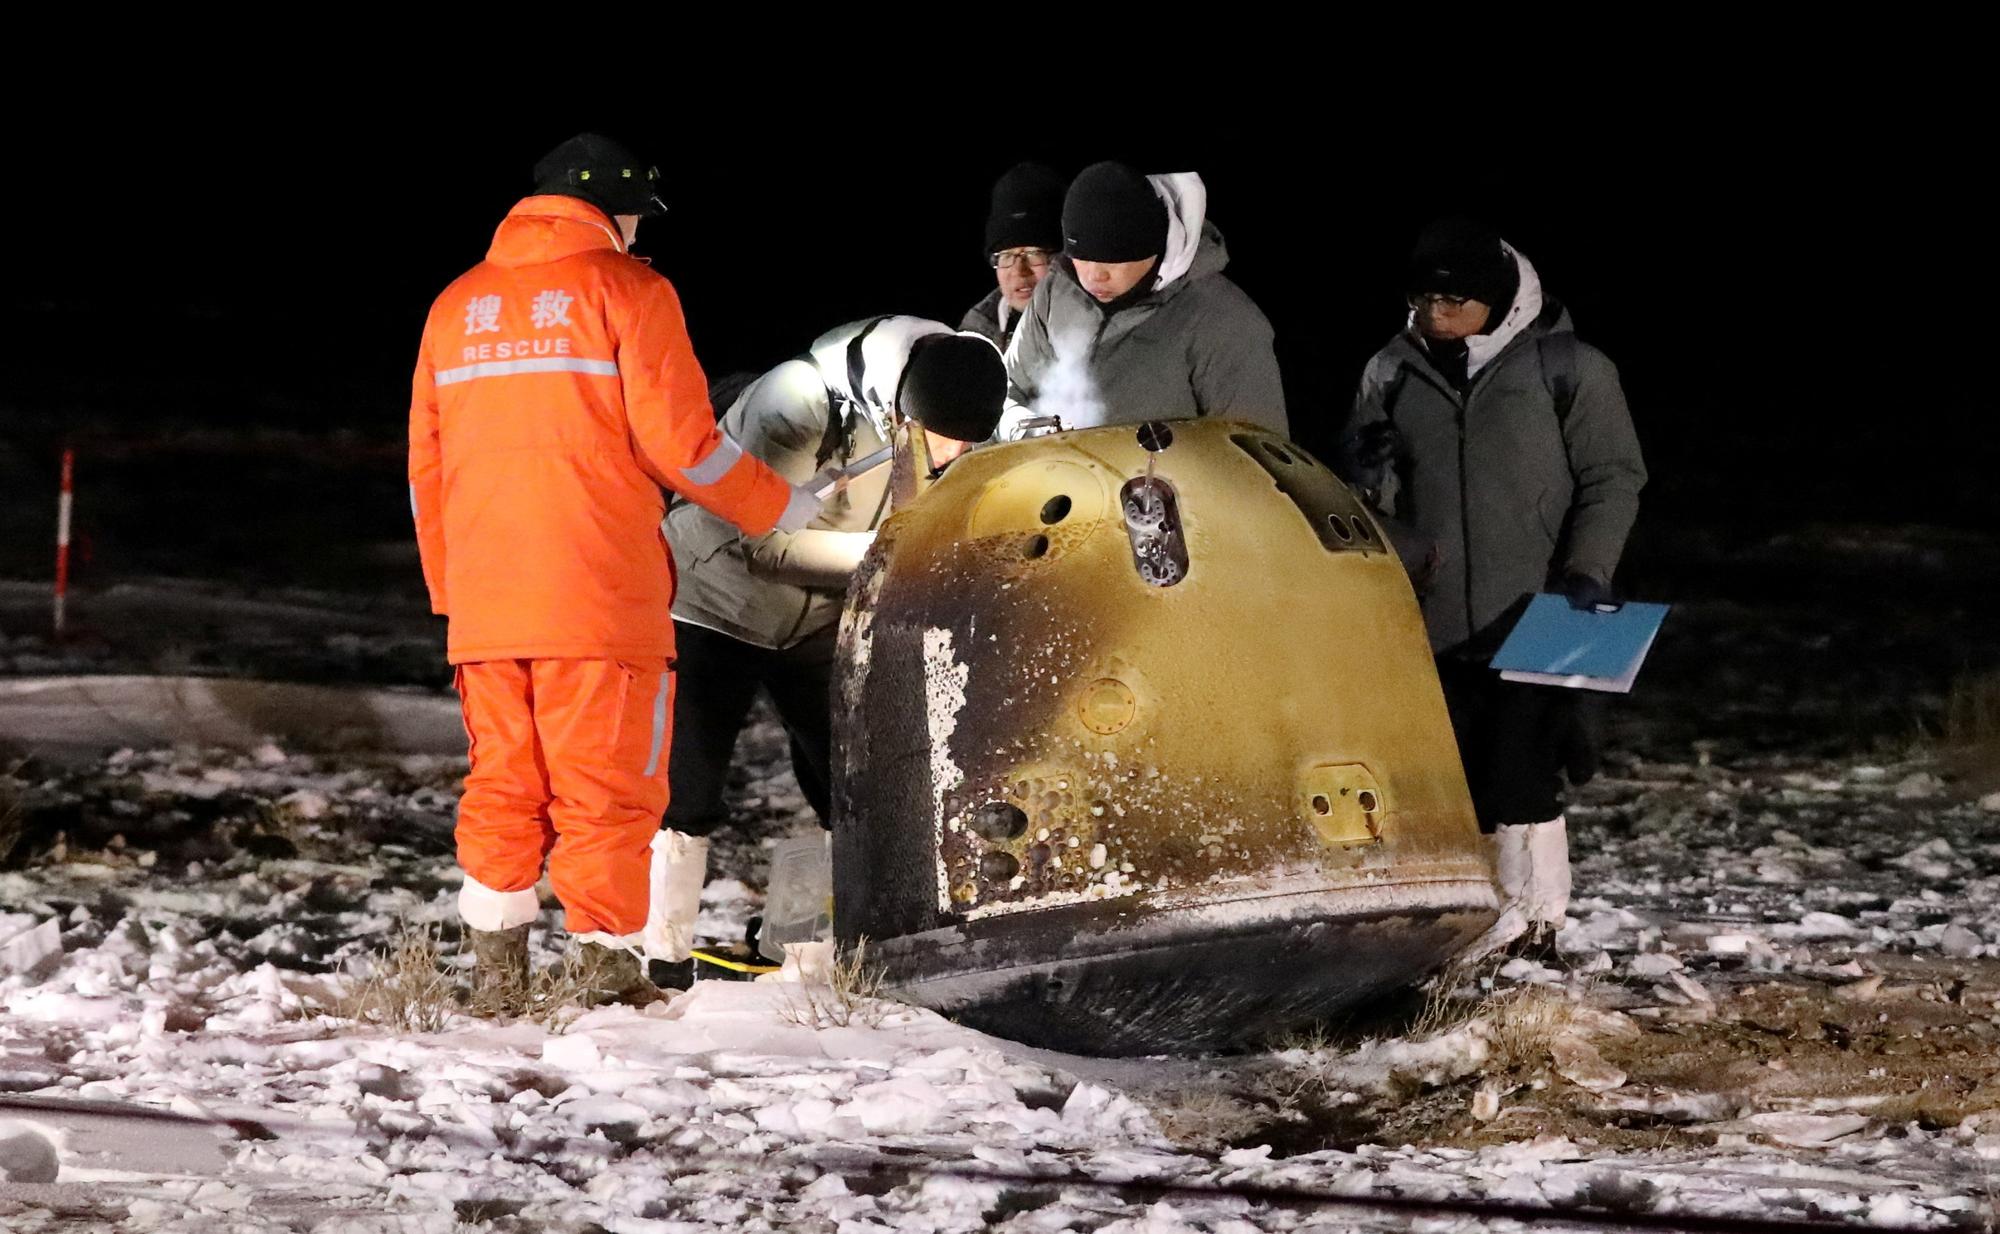 La capsule de retour lunaire Chang'e-5 transportant des échantillons prélevés sur la Lune, après son atterrissage dans la région autonome de Mongolie intérieure, dans le nord de la Chine, le 17 décembre 2020. [Reuters - China Daily]